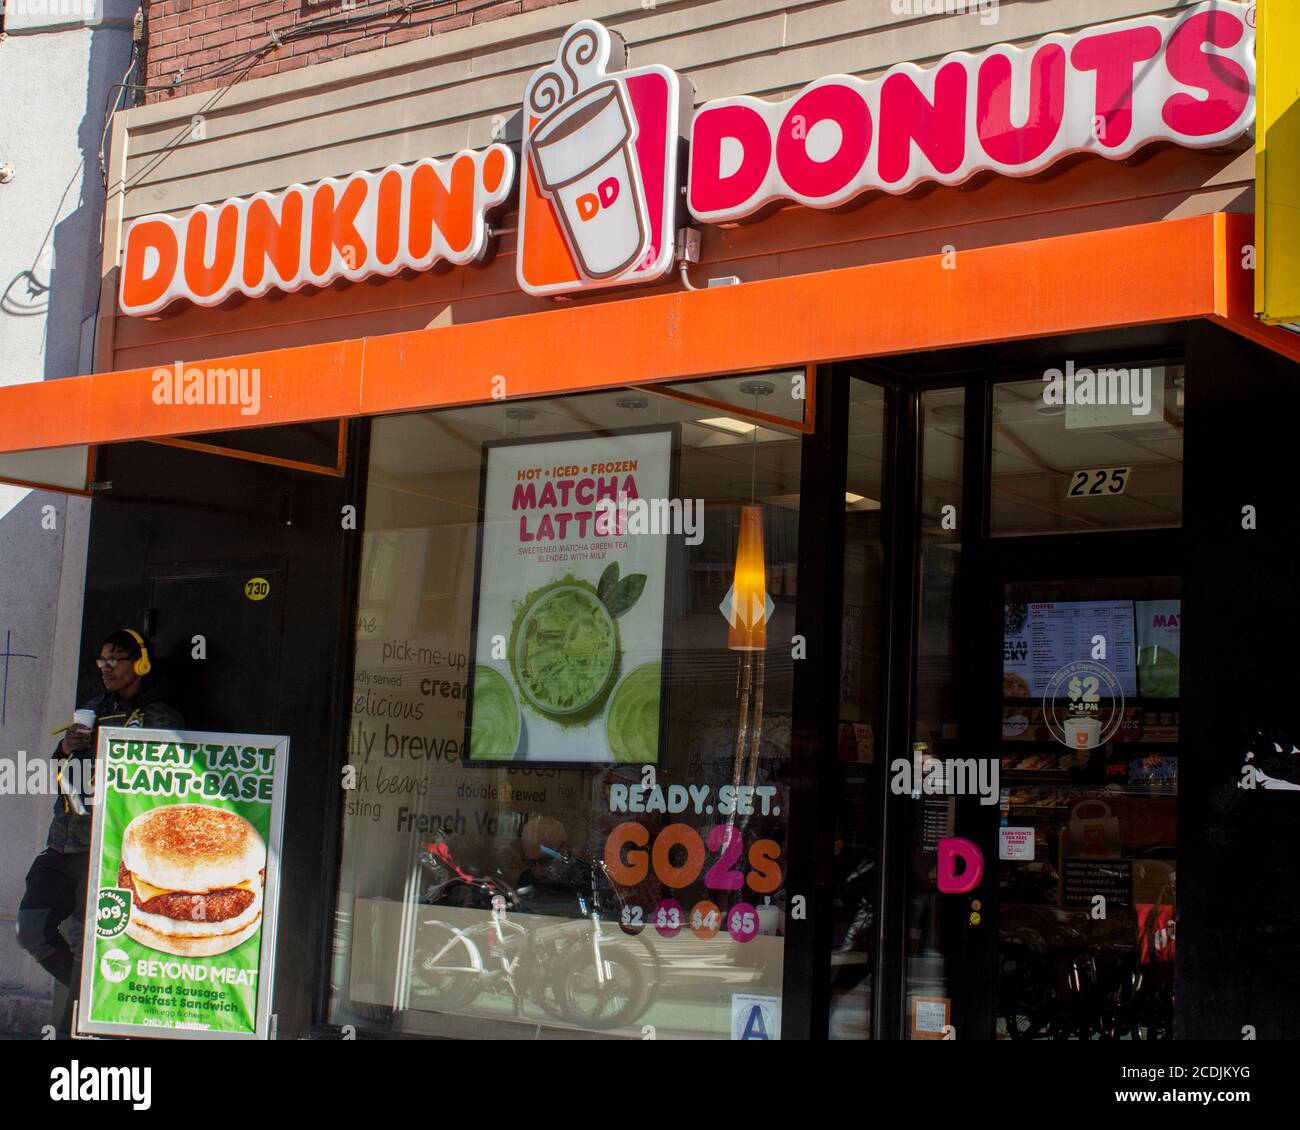 Esterno di un negozio Dunkin Donuts a Chelsea, Manhattan con cartelli che pubblicizzano la loro pianta a base di hamburger senza carne e matcha lattes Foto Stock